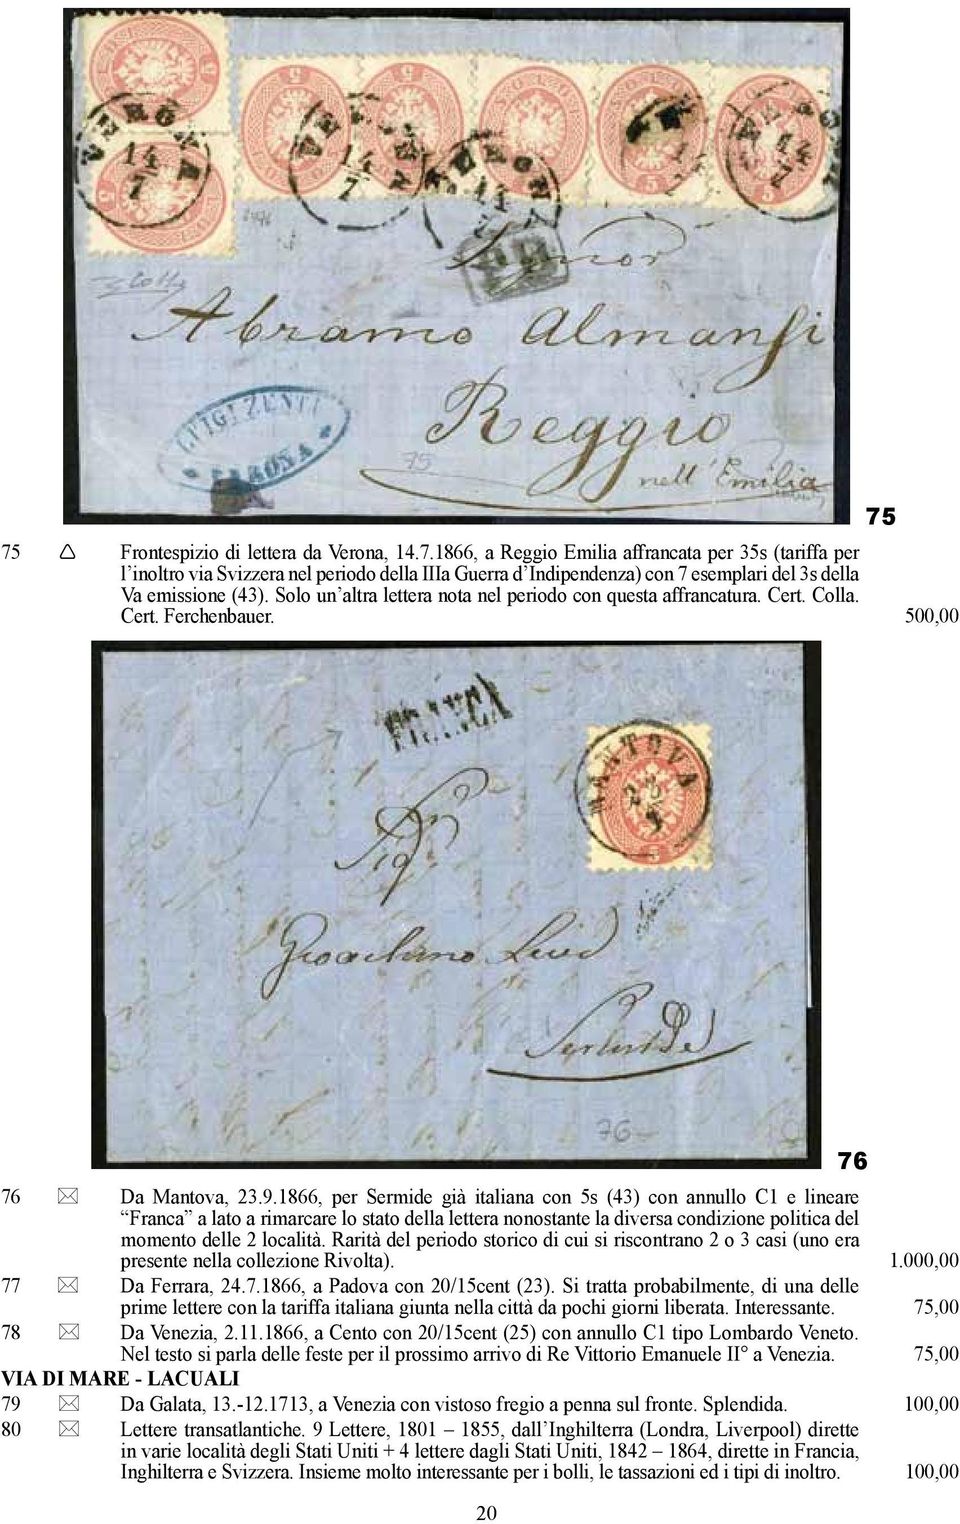 1866, per Sermide già italiana con 5s (43) con annullo C1 e lineare Franca a lato a rimarcare lo stato della lettera nonostante la diversa condizione politica del momento delle 2 località.